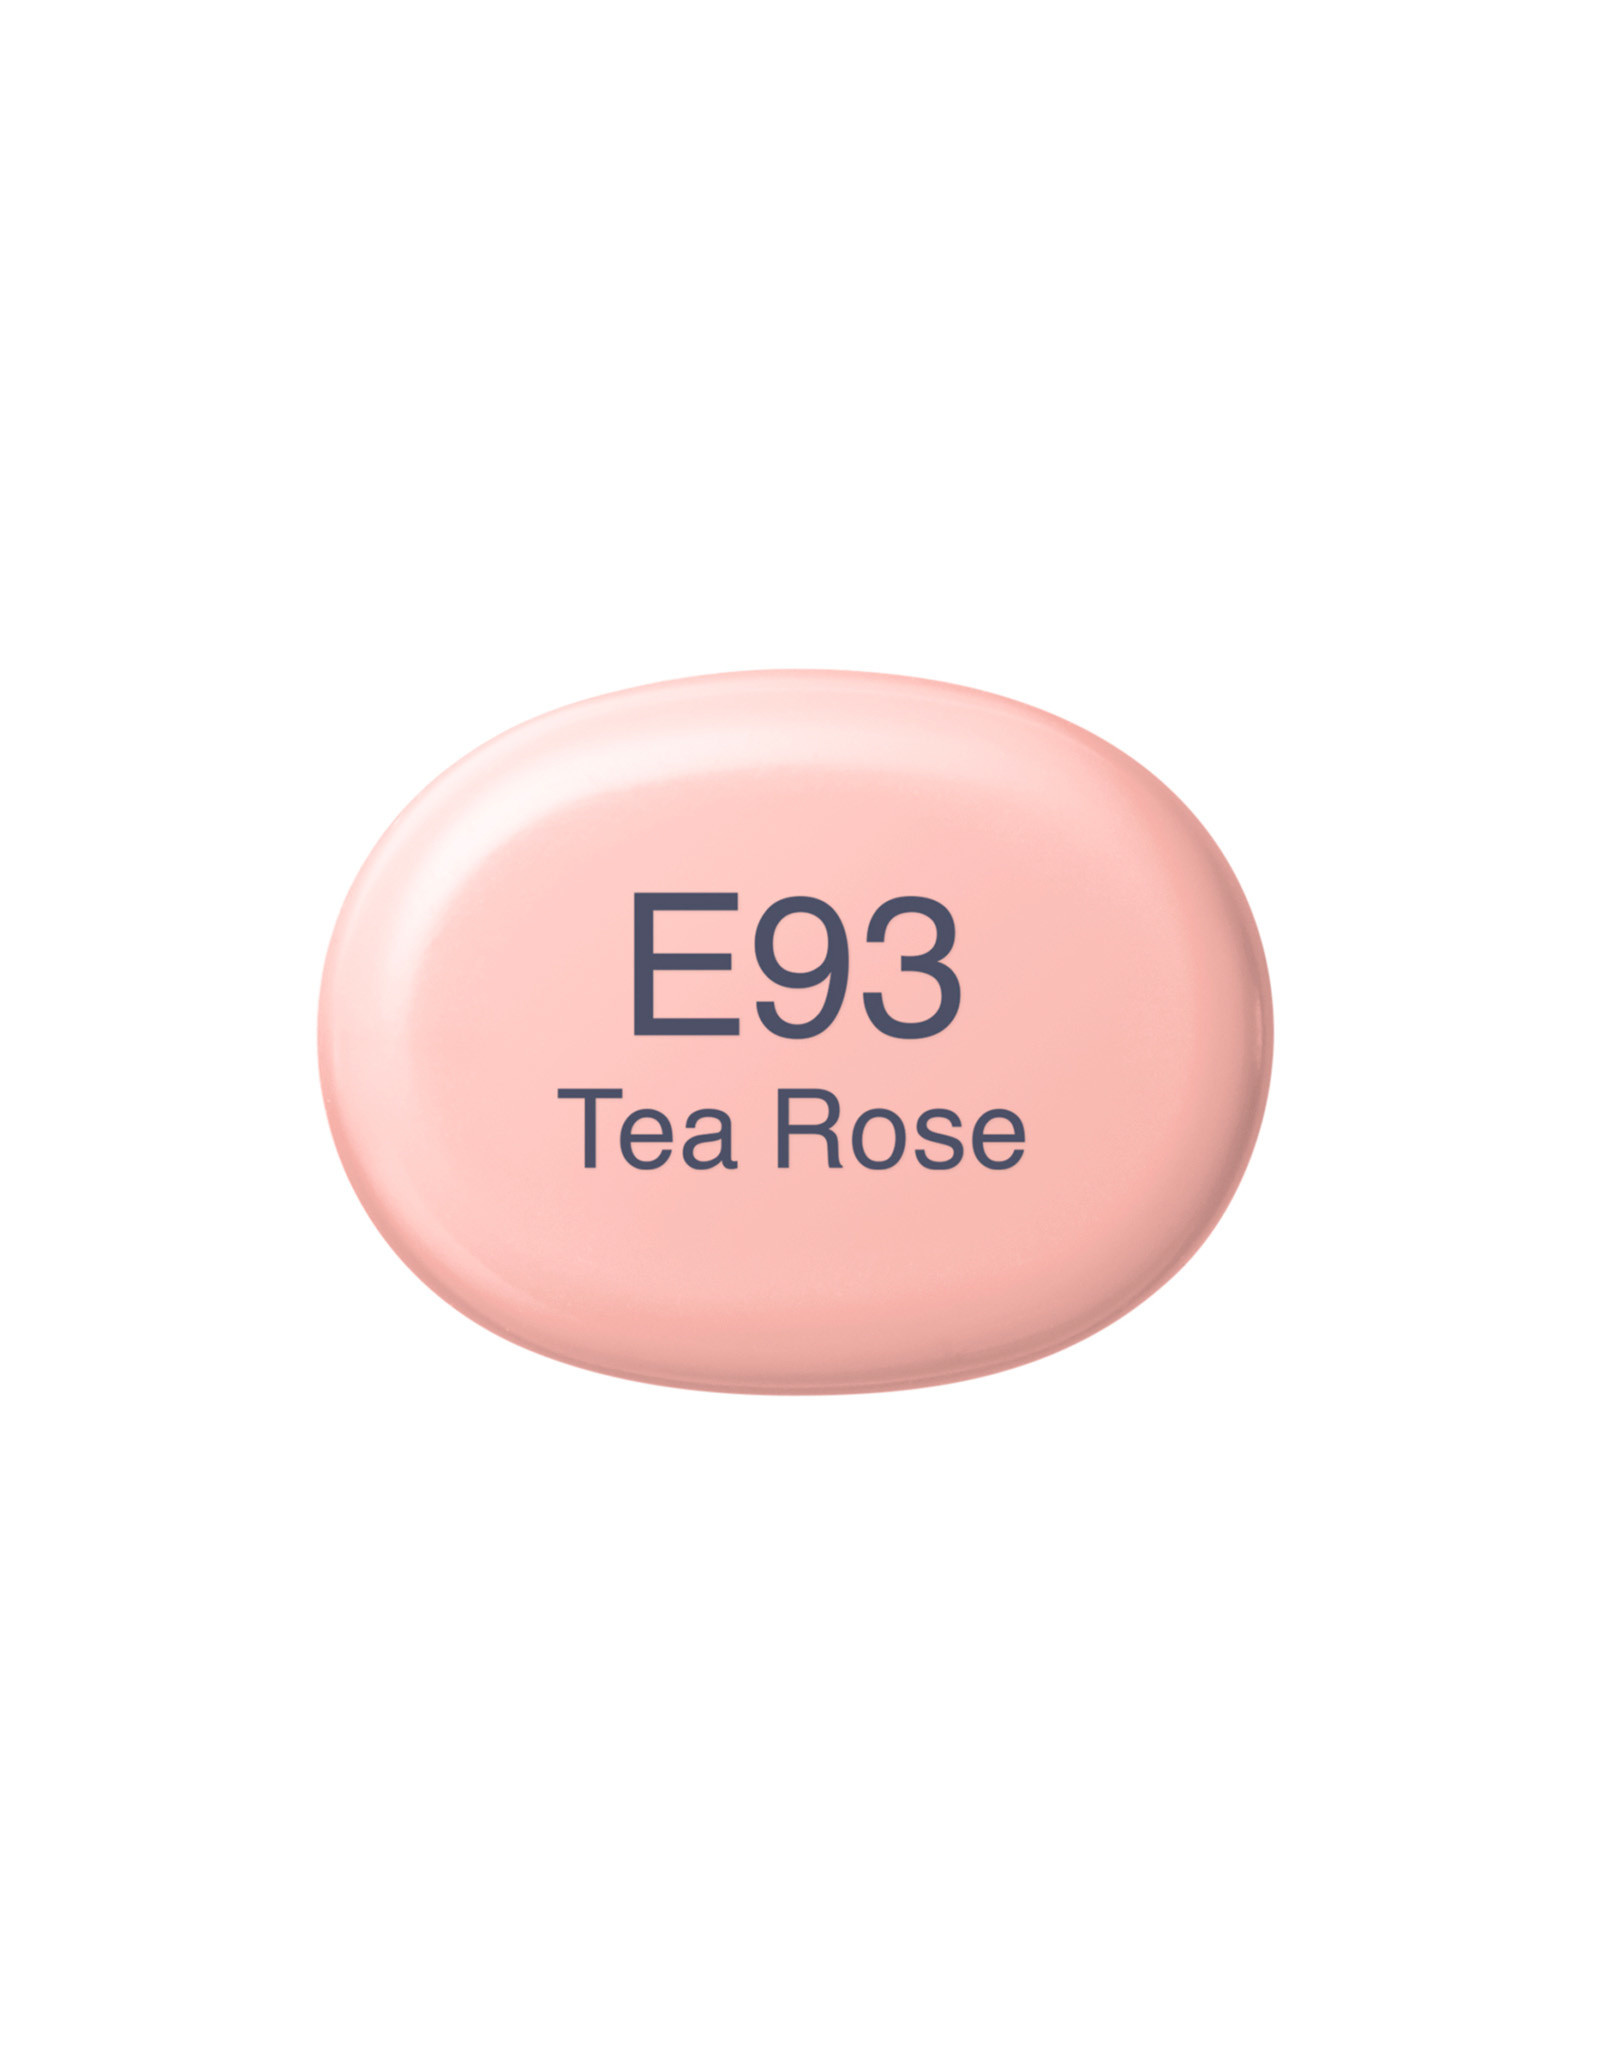 COPIC COPIC Sketch Marker E93 Tea Rose